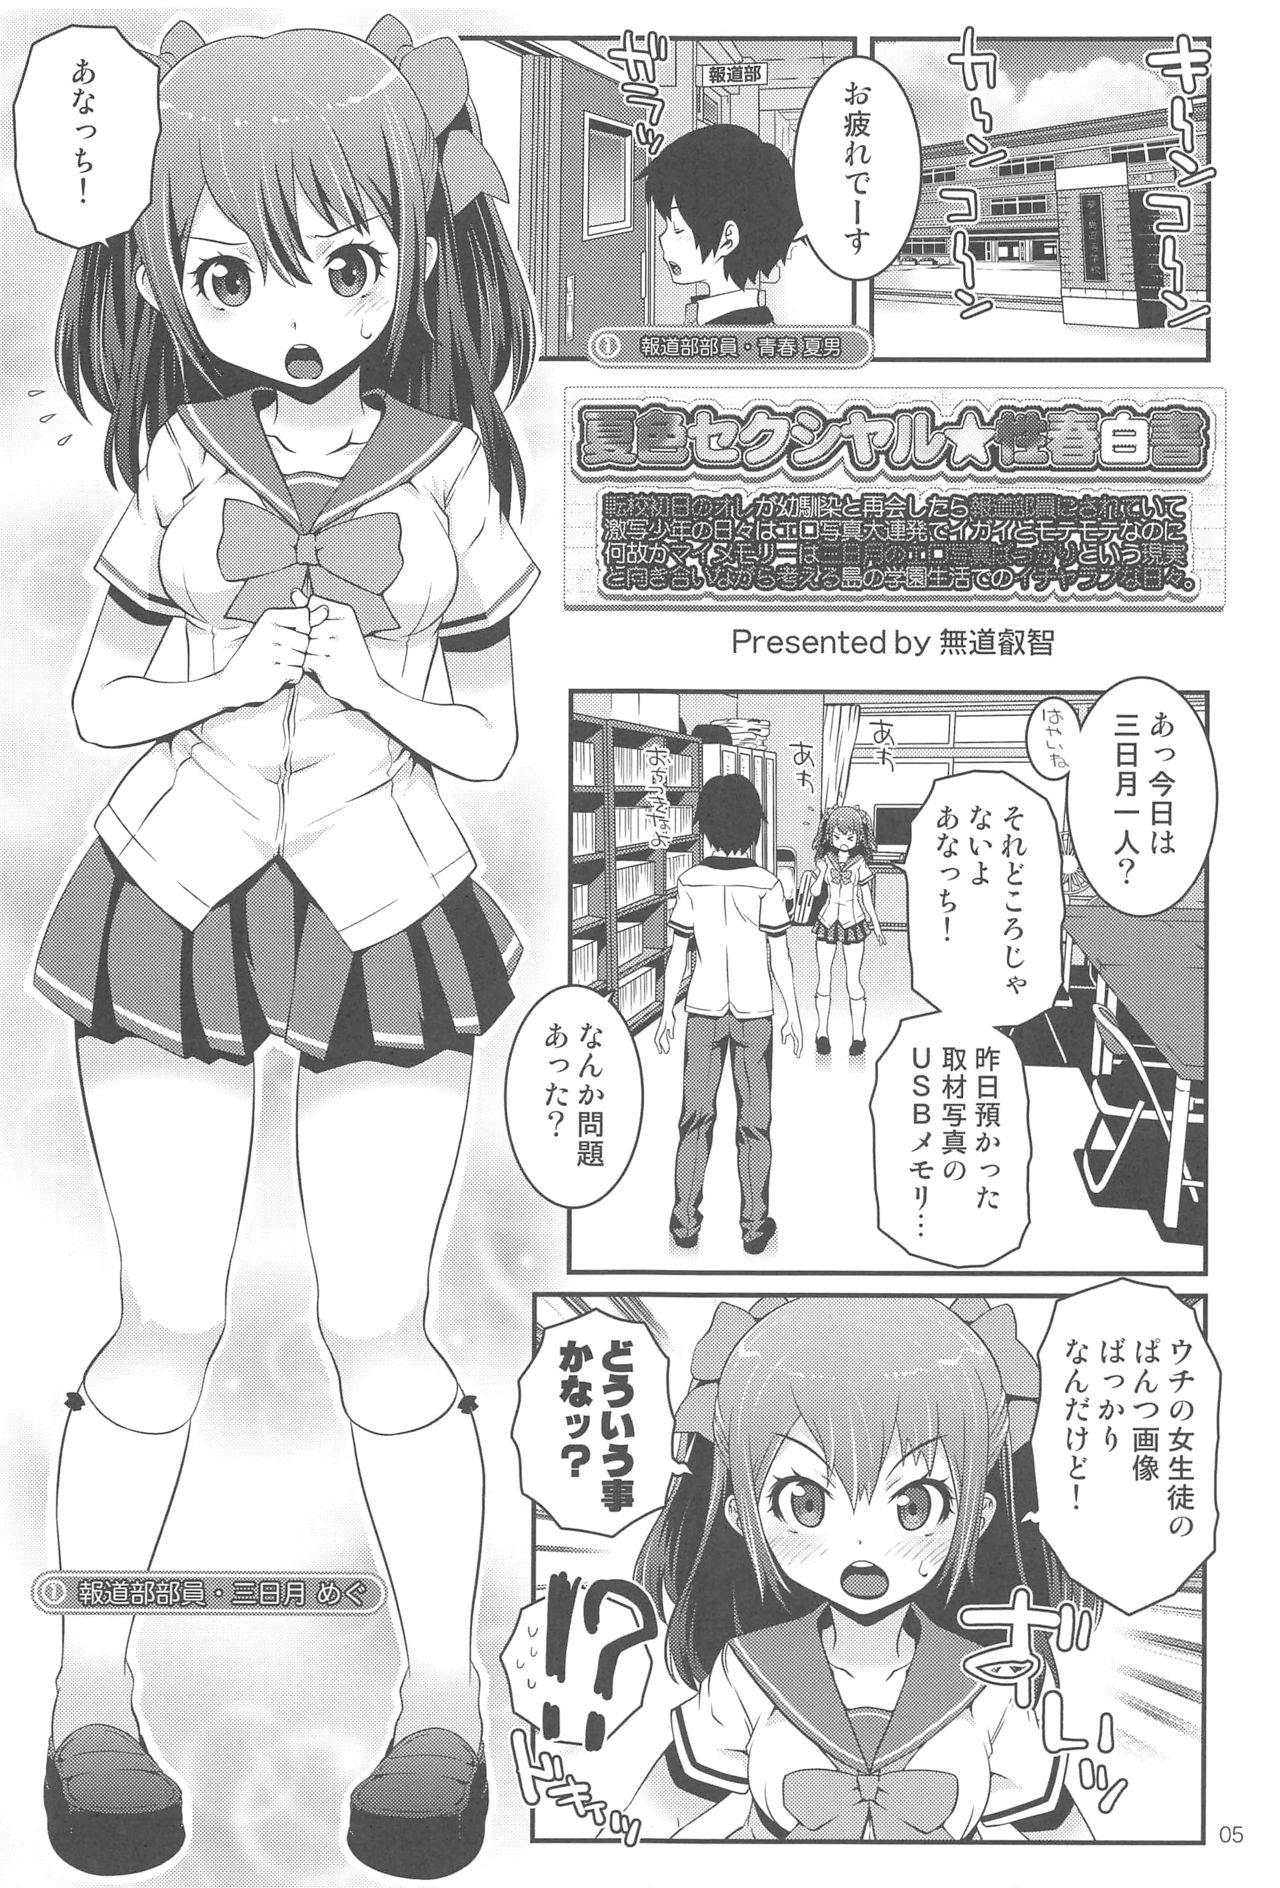 Fun Natsuiro Sexual☆Seishun Hakusho - Natsuiro high school seishun hakusho Foursome - Page 4